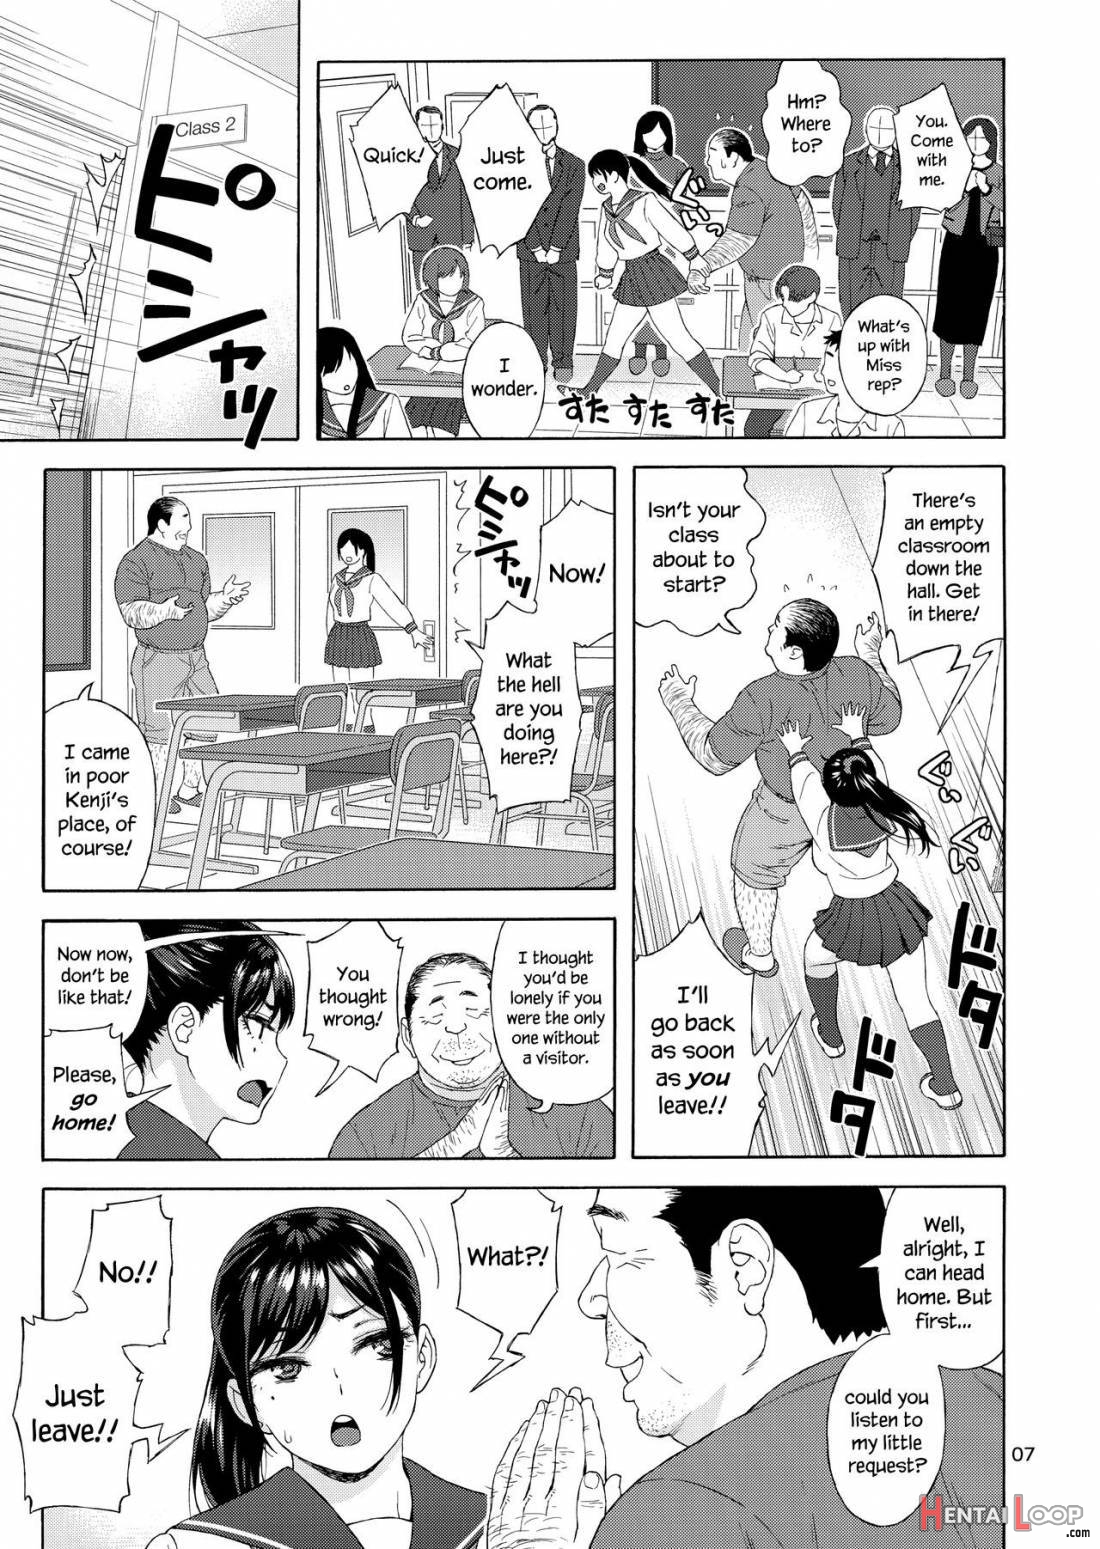 Otouto No Musume 3 page 5